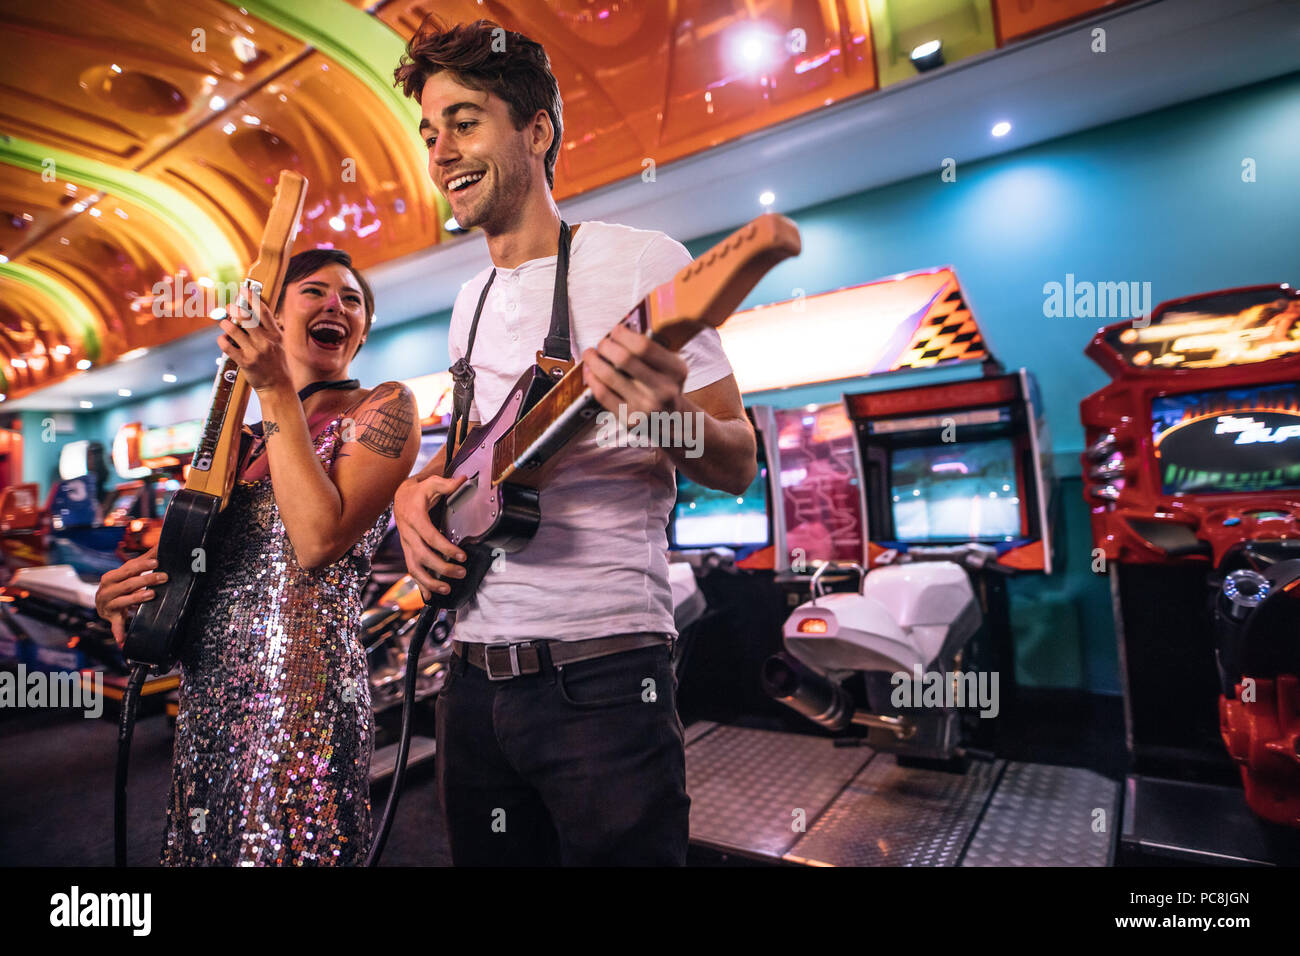 Paar Gitarre spielen Spiel Holding gaming Gitarren bei einem Gaming Salon. Lächelnd Mann und Frau Spaß Spiele spielen an einem Gaming Arcade. Stockfoto